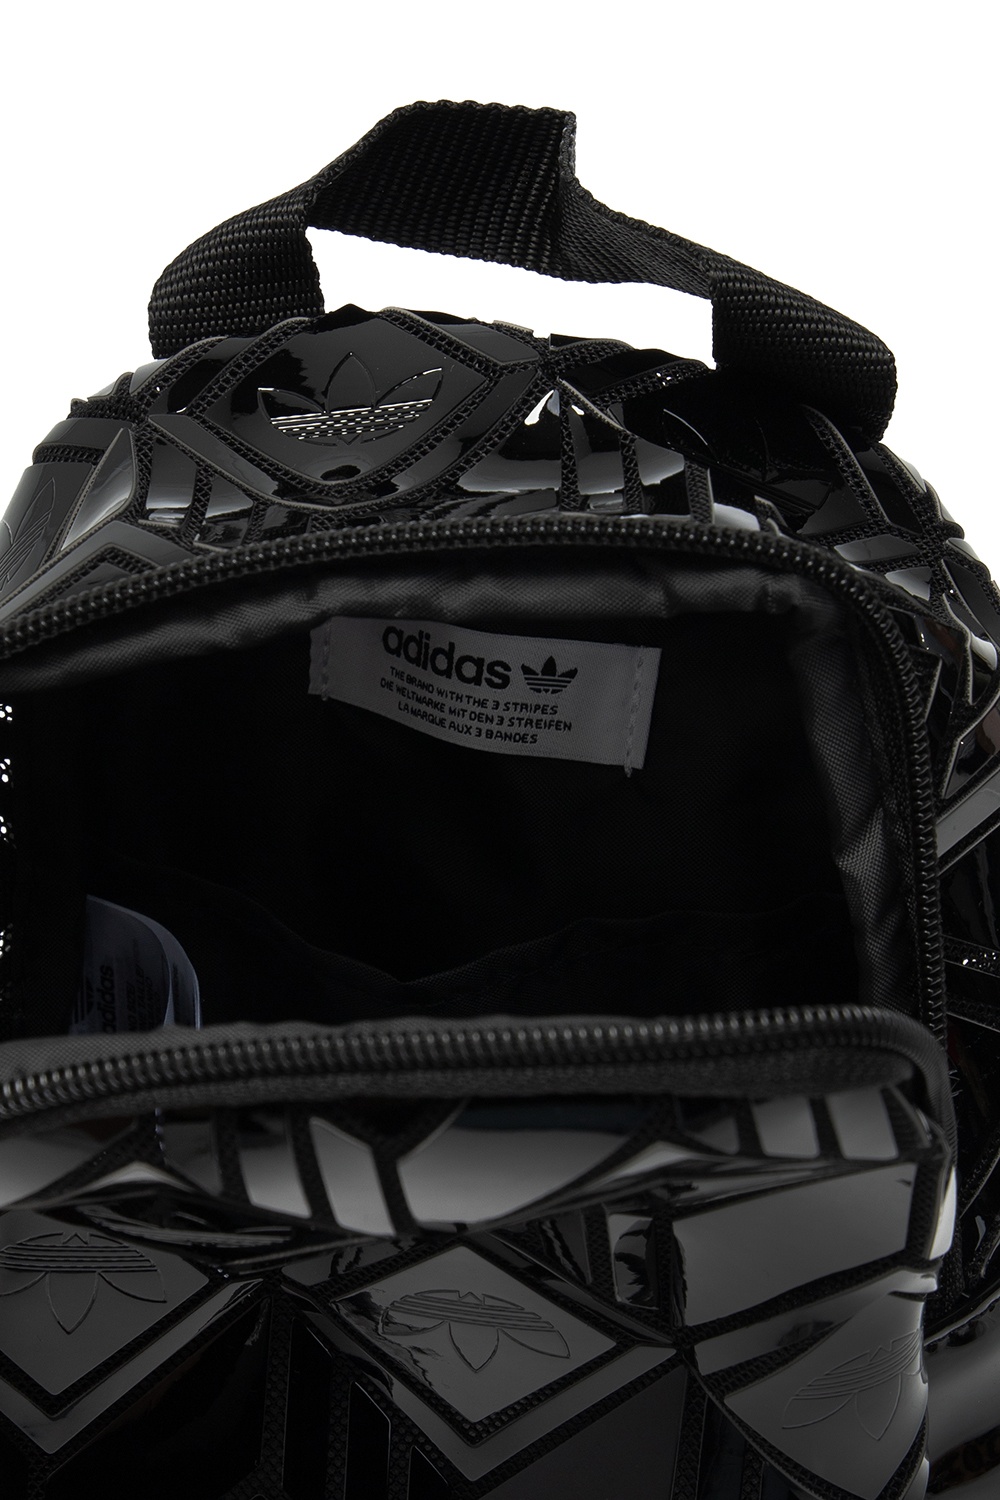 Logo Backpack Adidas Originals Gov Us - bag roblox adidas bag